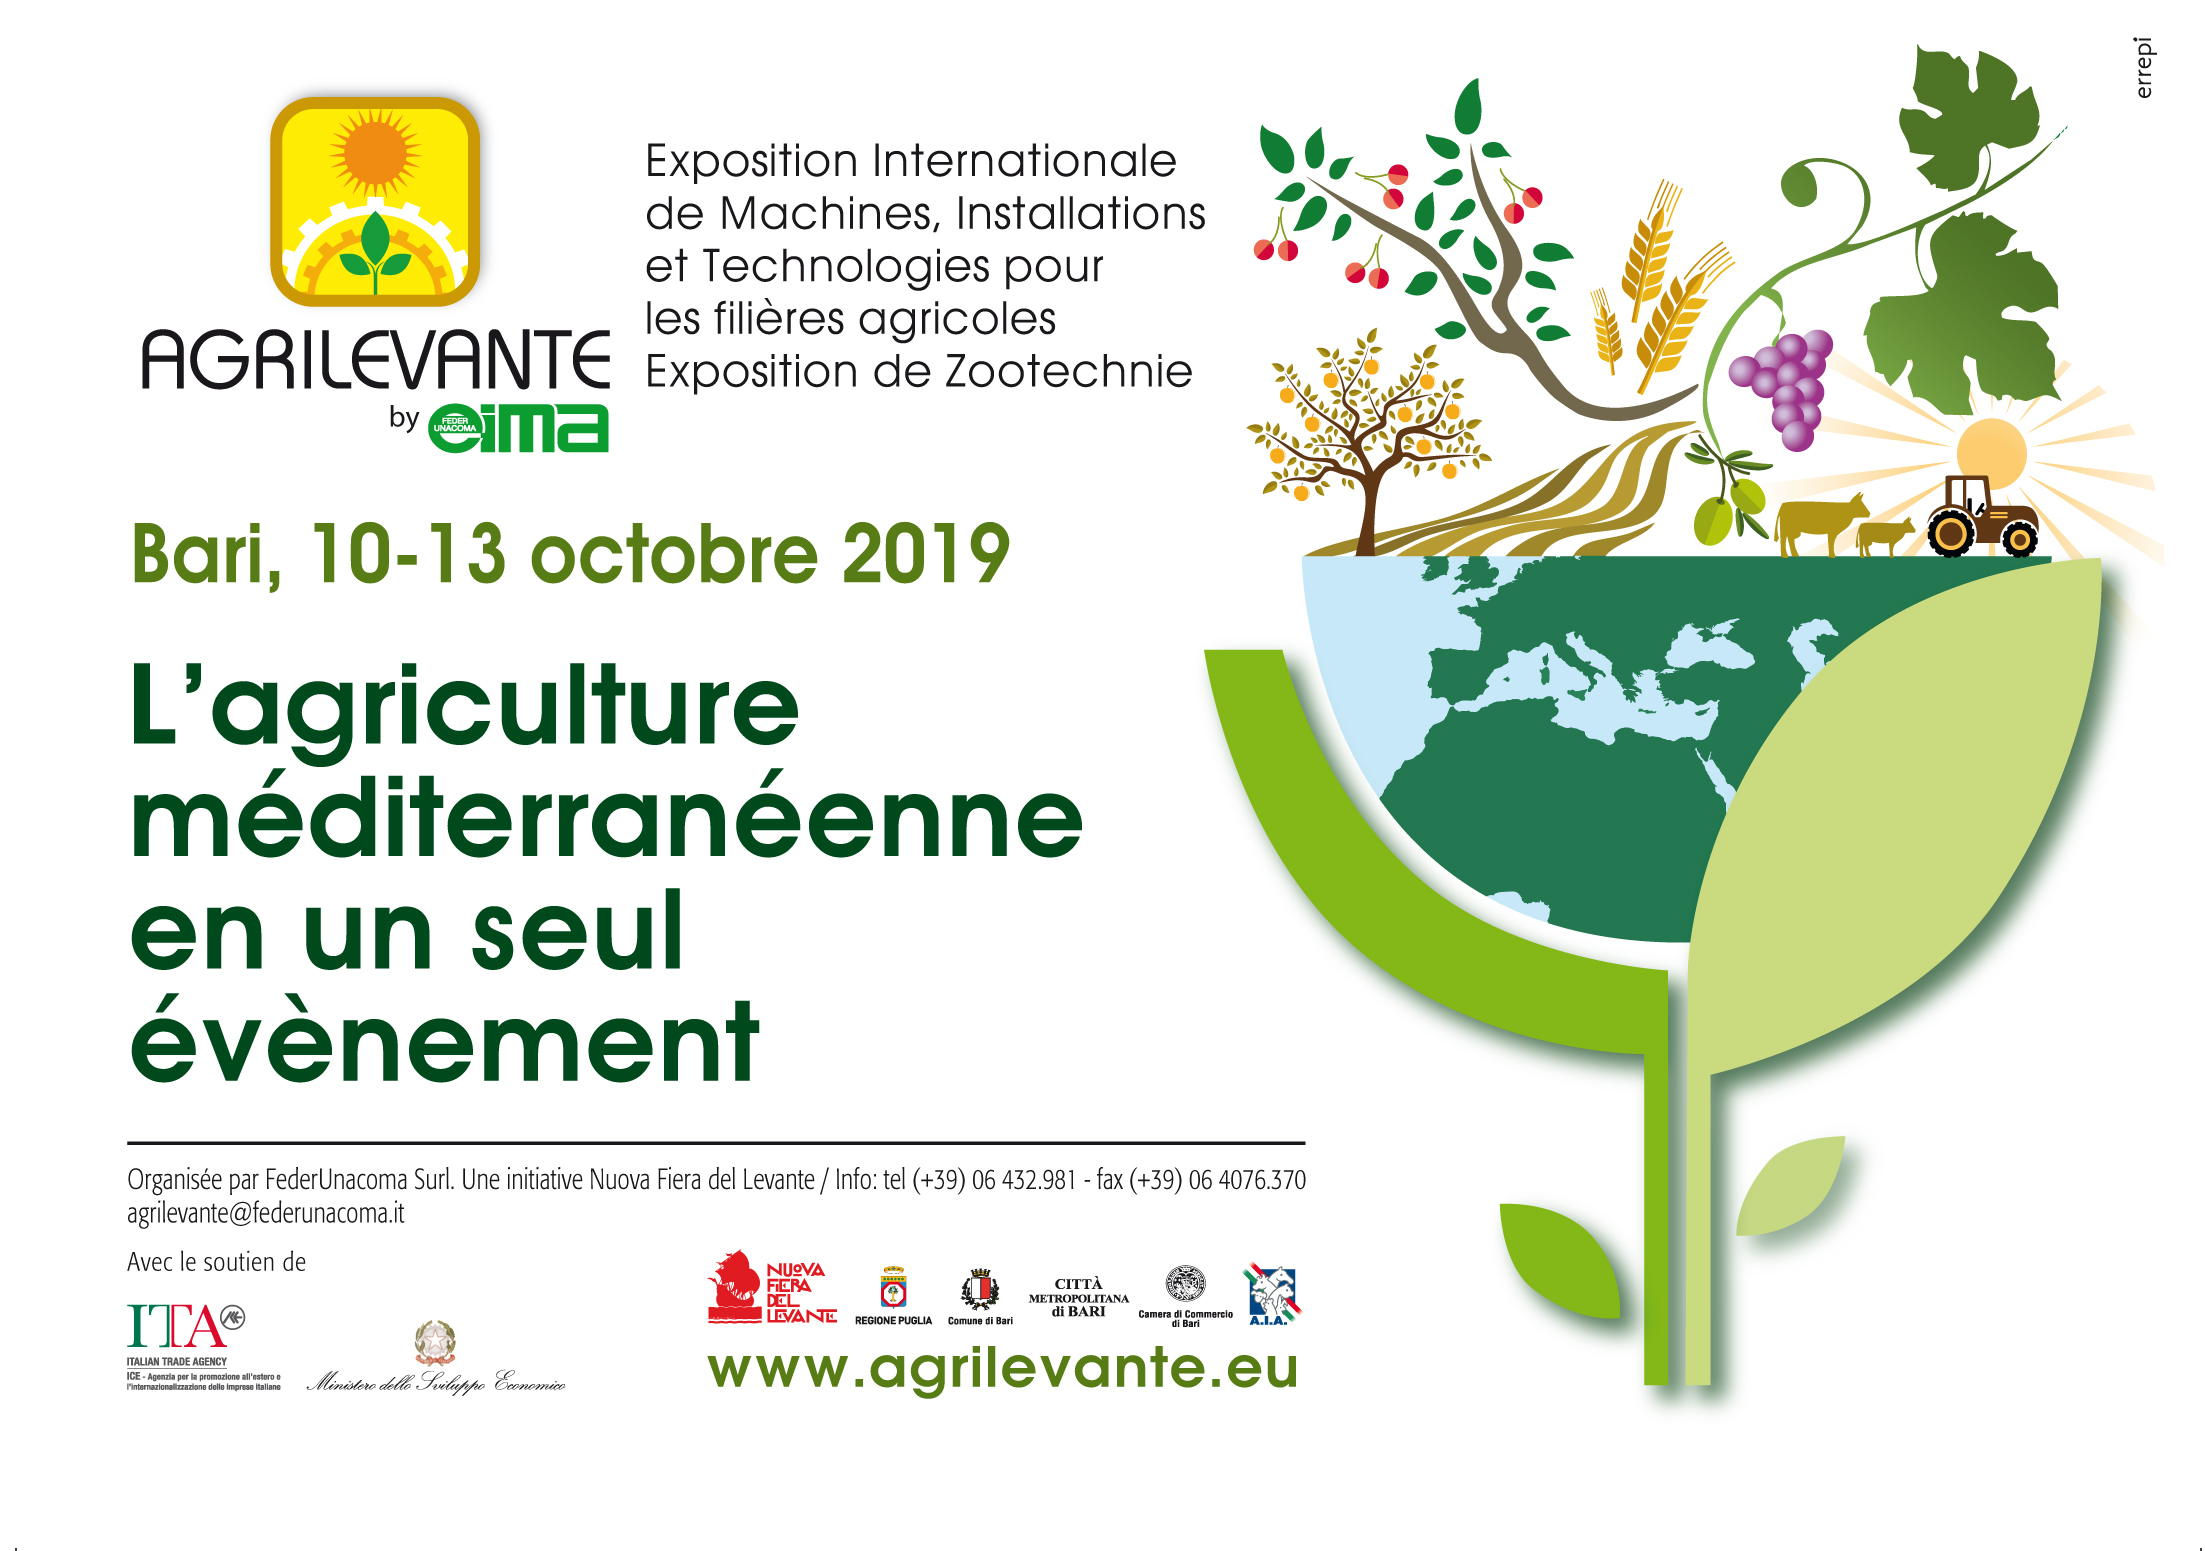 Salon du machinisme AGRILEVANTE: du 10 au 13 octobre 2019, Bari (Italie)